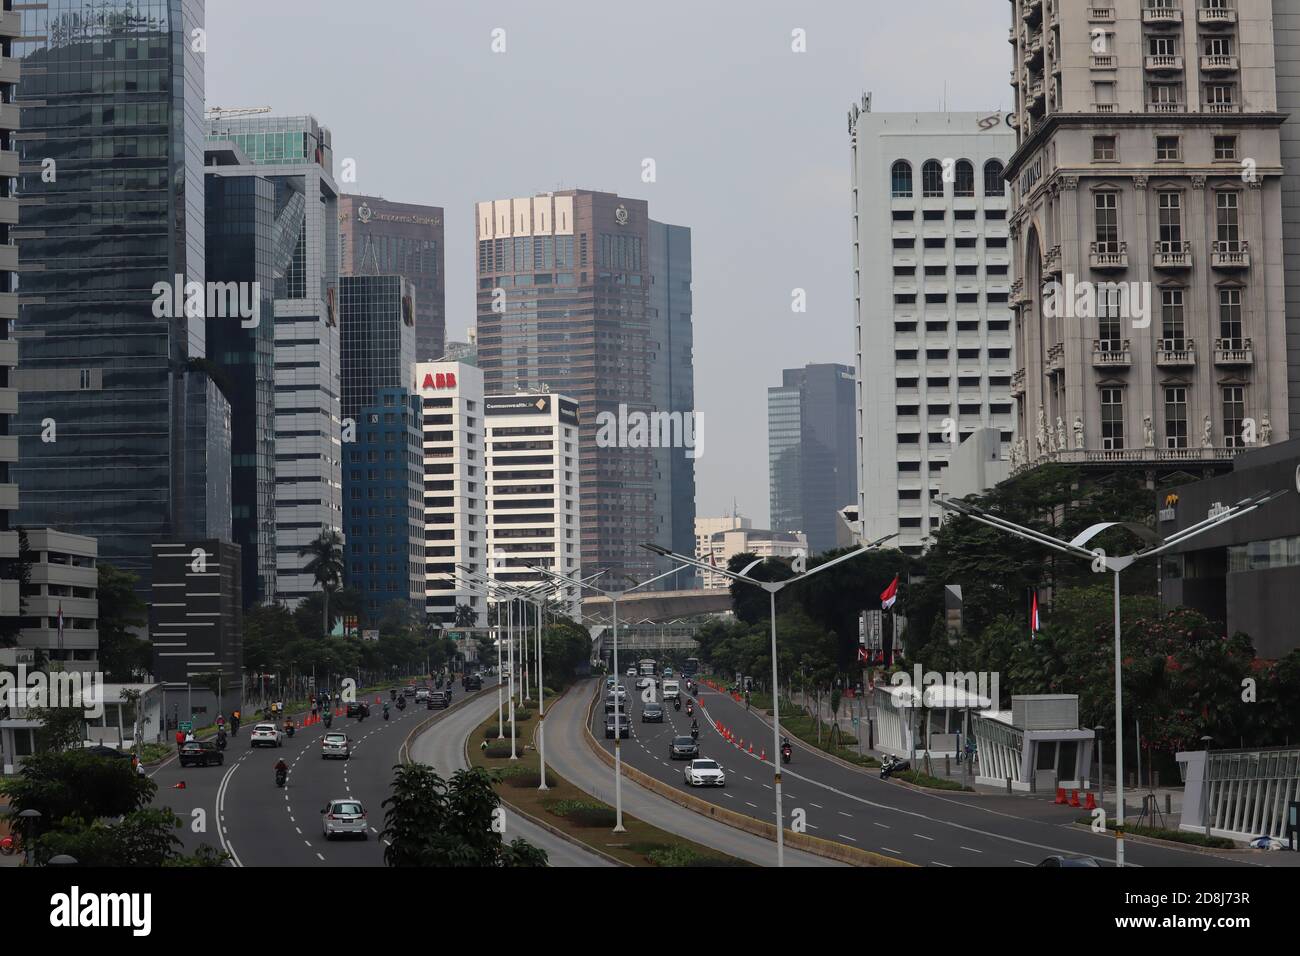 giacarta / Indonesia - 23 settembre 2020. Il paesaggio della città di Giacarta con gli edifici e gli appartamenti torreggianti Foto Stock